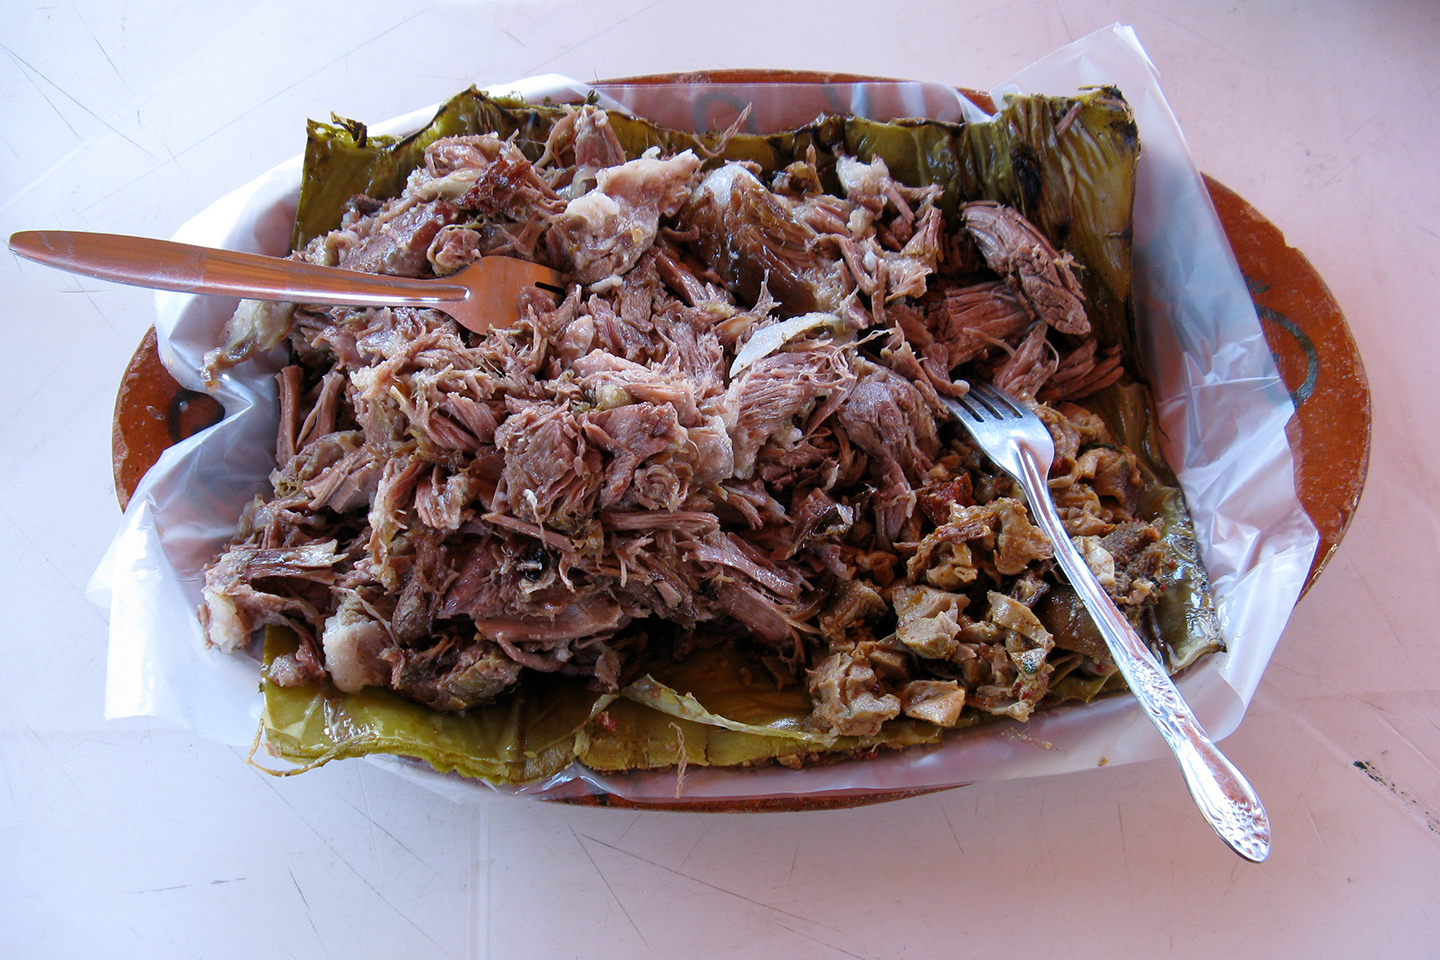 En Hidalgo, la barbacoa se prepara en un hoyo de tierra. Foto: Tips para tu viaje.